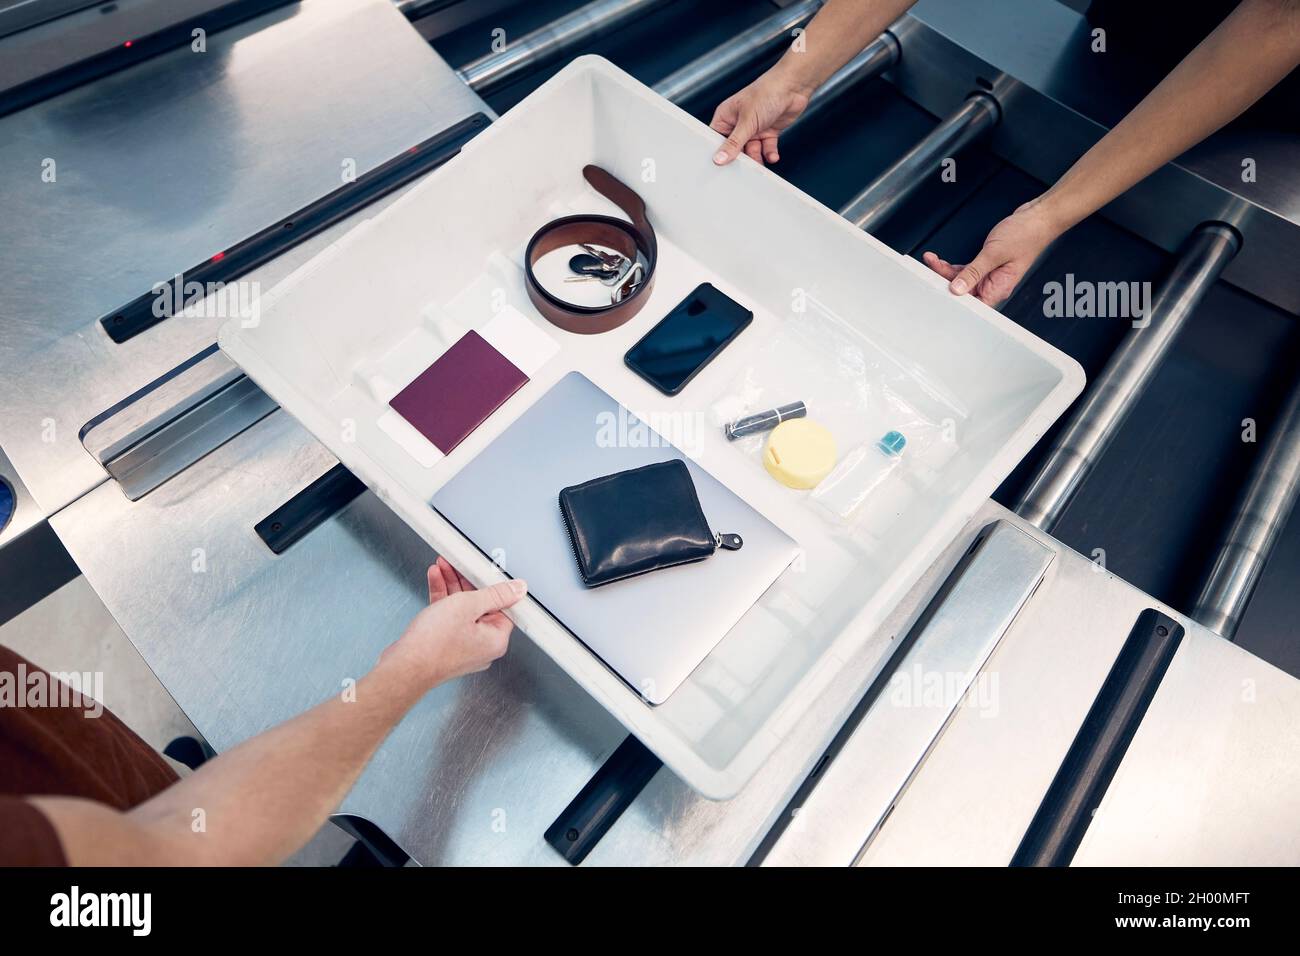 Persönliche Gegenstände, Flüssigkeiten und Laptop im Container während der Kontrolle bei der Sicherheitskontrolle des Flughafens vor dem Flug. Stockfoto